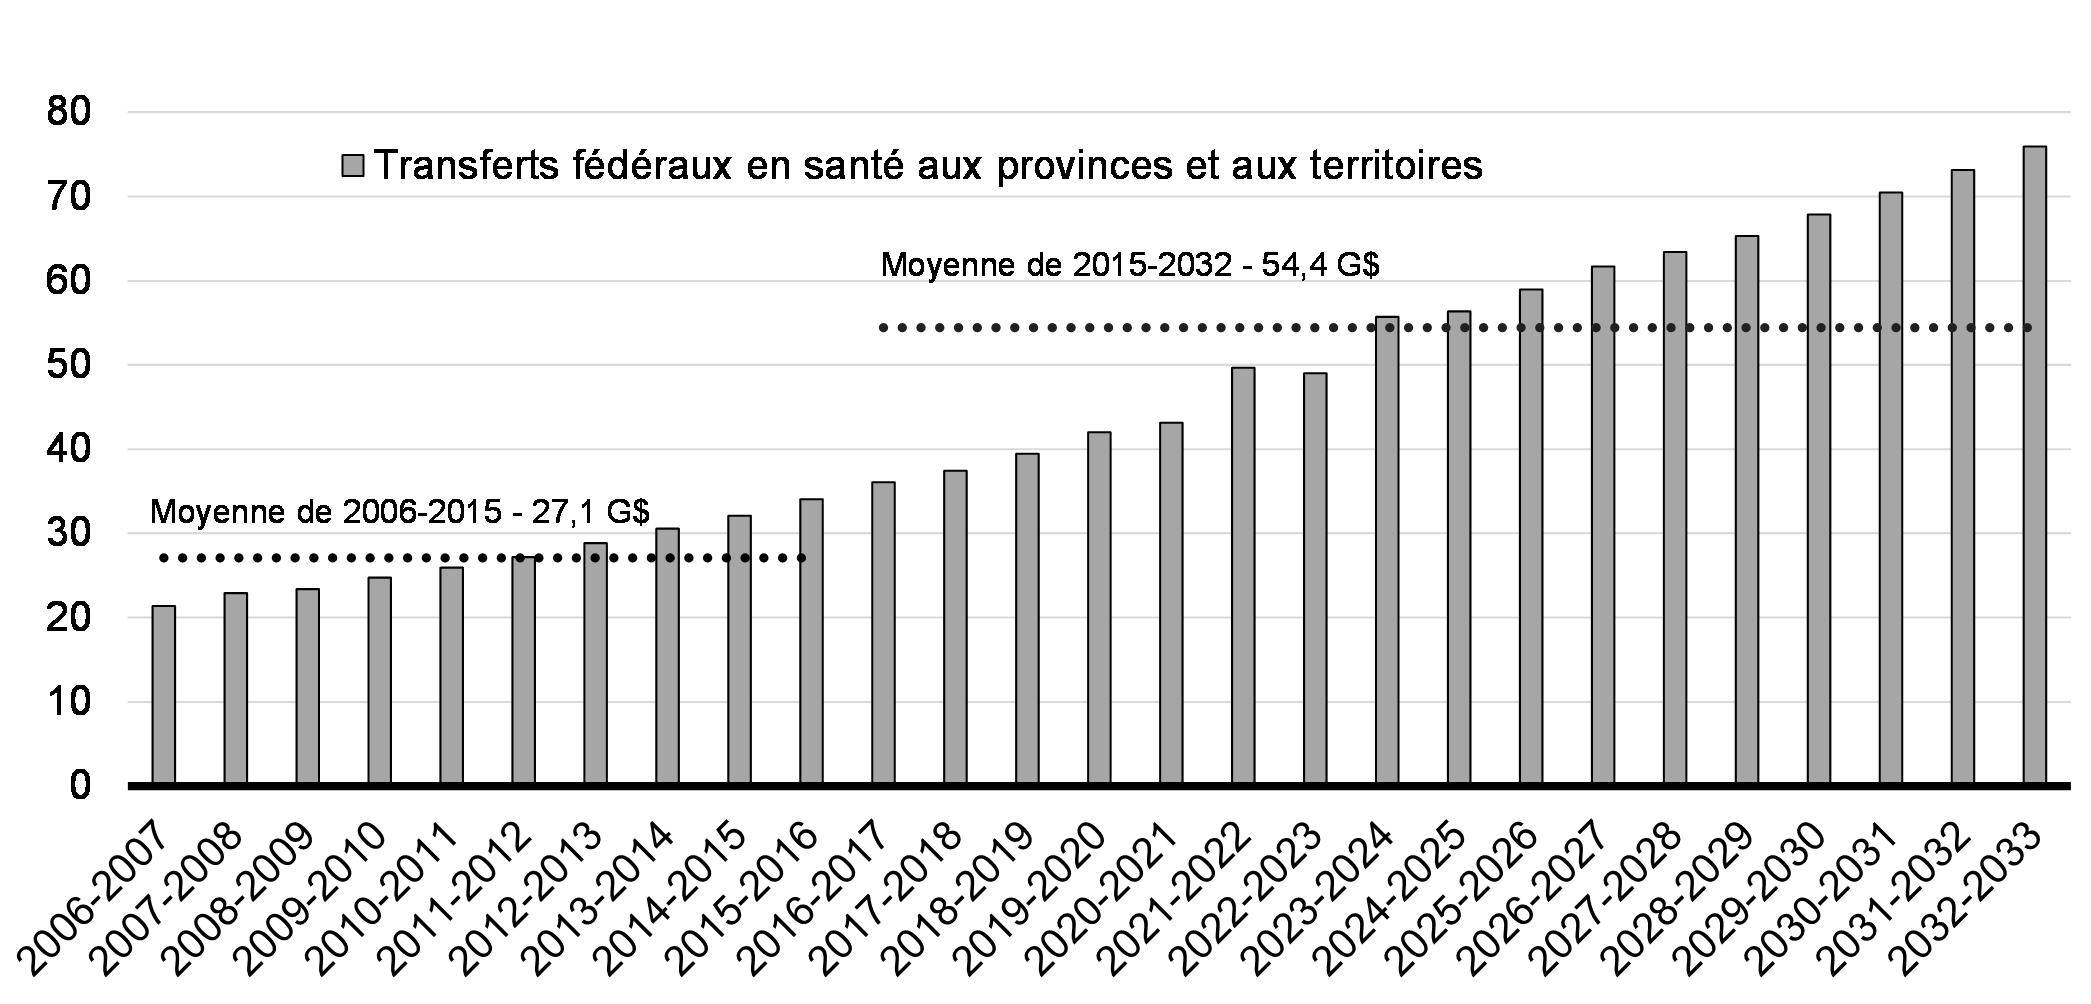 Graphique 2.1: Transferts fédéraux en santé aux provinces et aux     territoires (de 2006-2007 à 2032-2033)